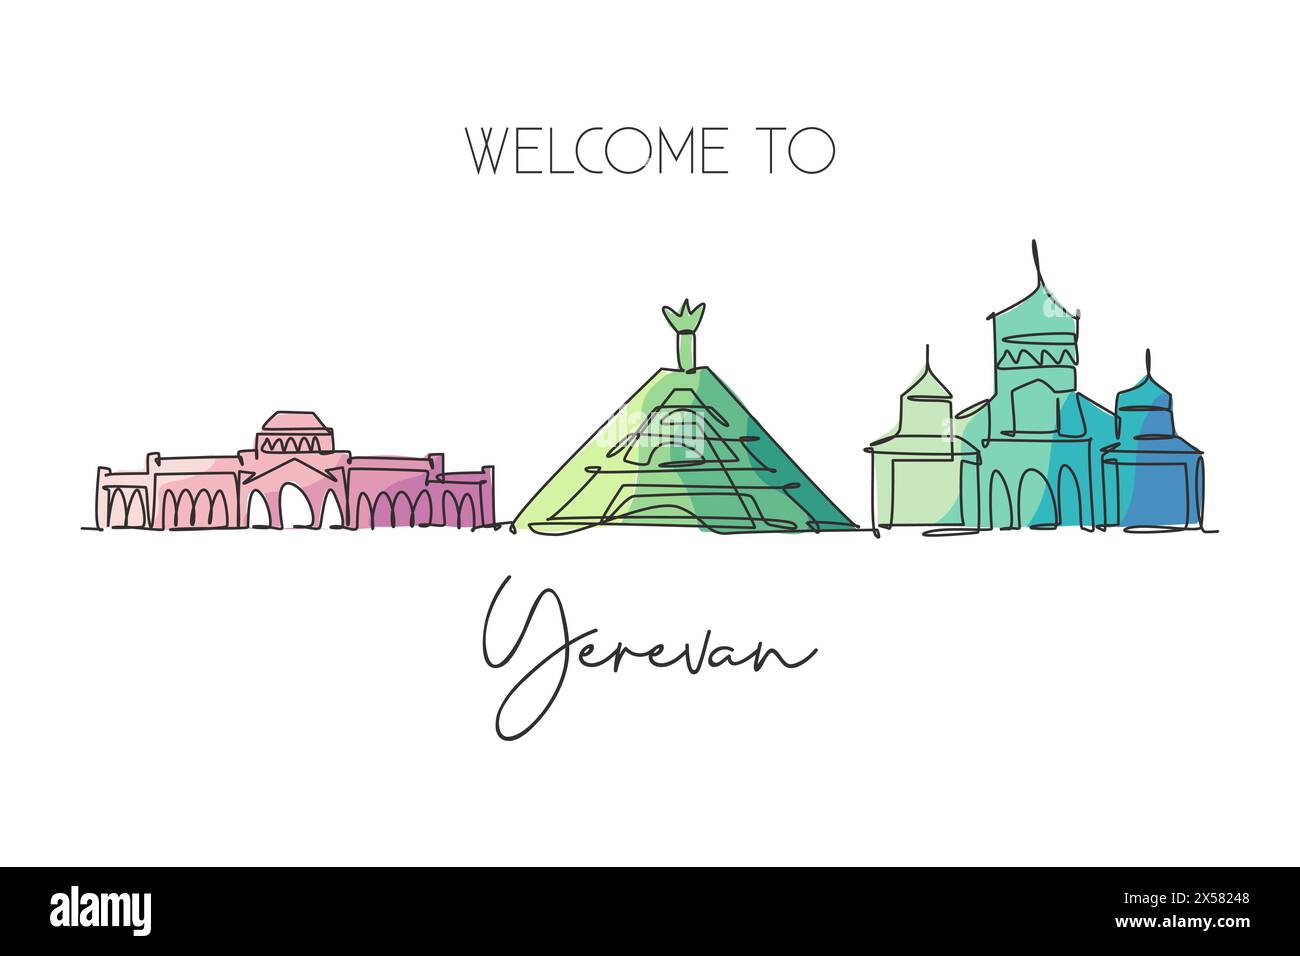 Eine durchgehende Linienzeichnung der Skyline von Jerewan, Armenien. Wunderschönes Wahrzeichen. Weltlandschaftstourismus Reise Urlaub Poster. Bearbeitbar, stilvoll, STR Stock Vektor